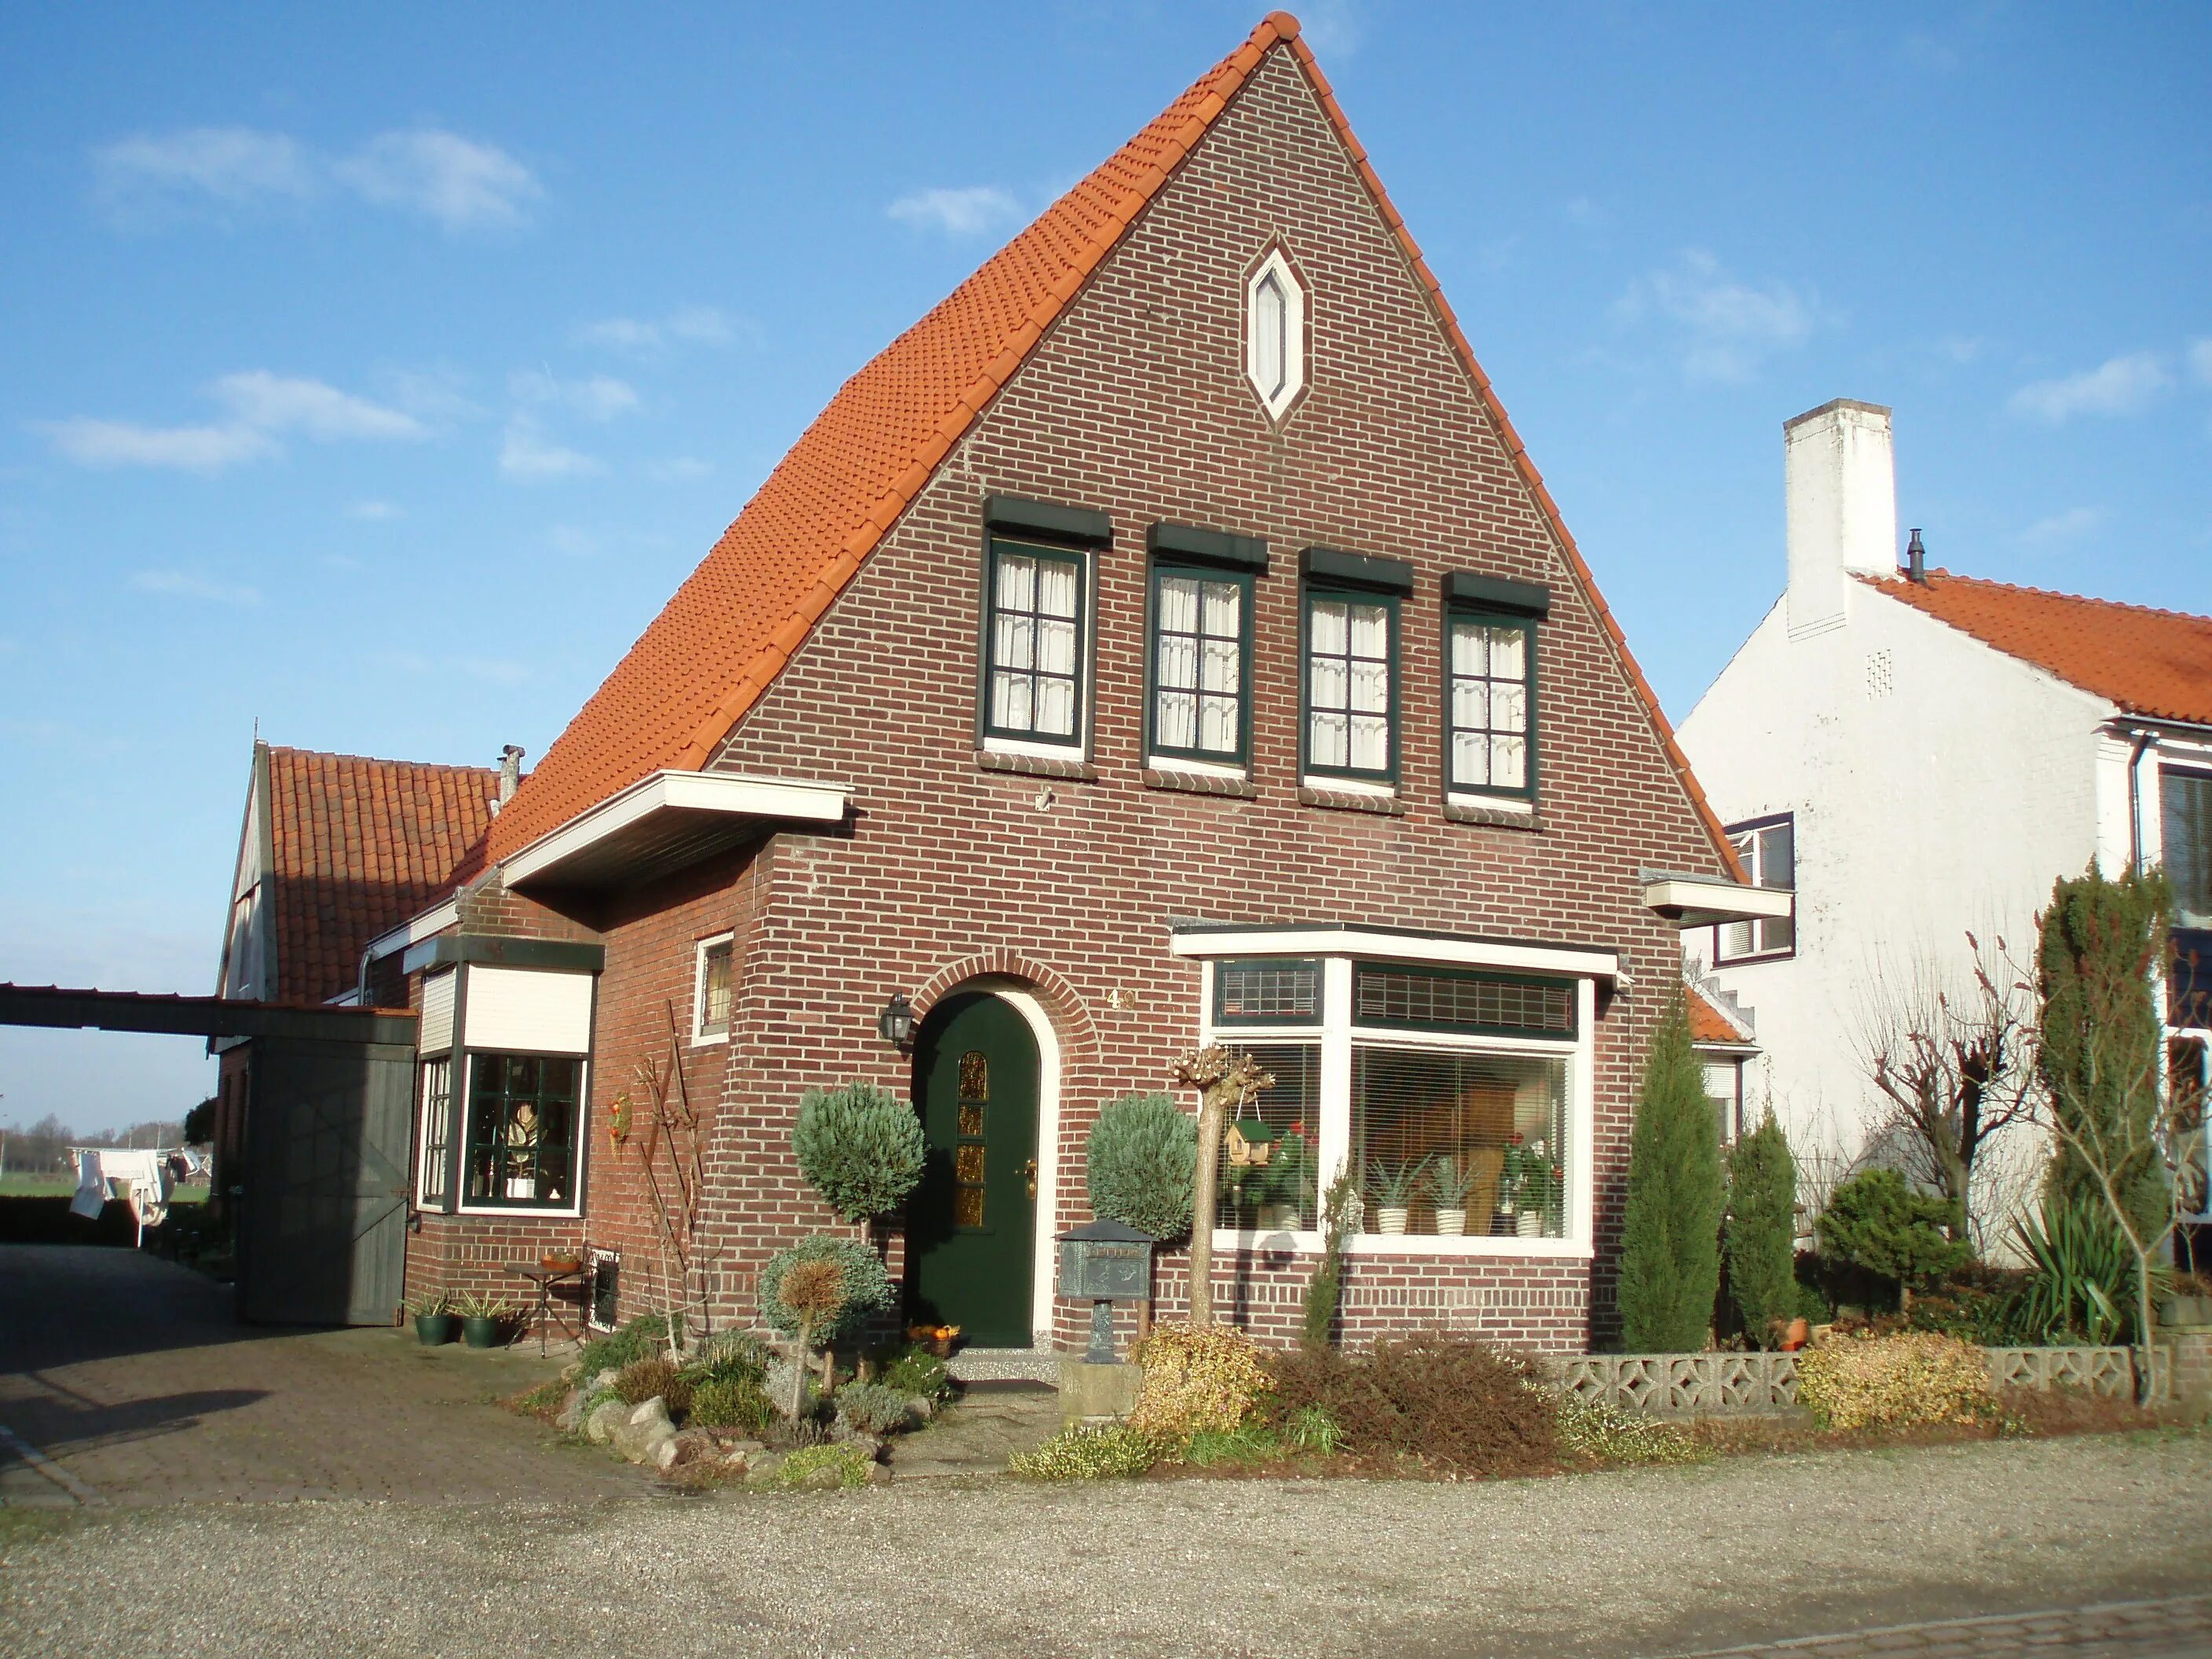 Дом в голландском стиле. Коттедж в голландском стиле. Домик в голландском стиле. Кирпичный дом в голландском стиле. Голландский дом отзывы